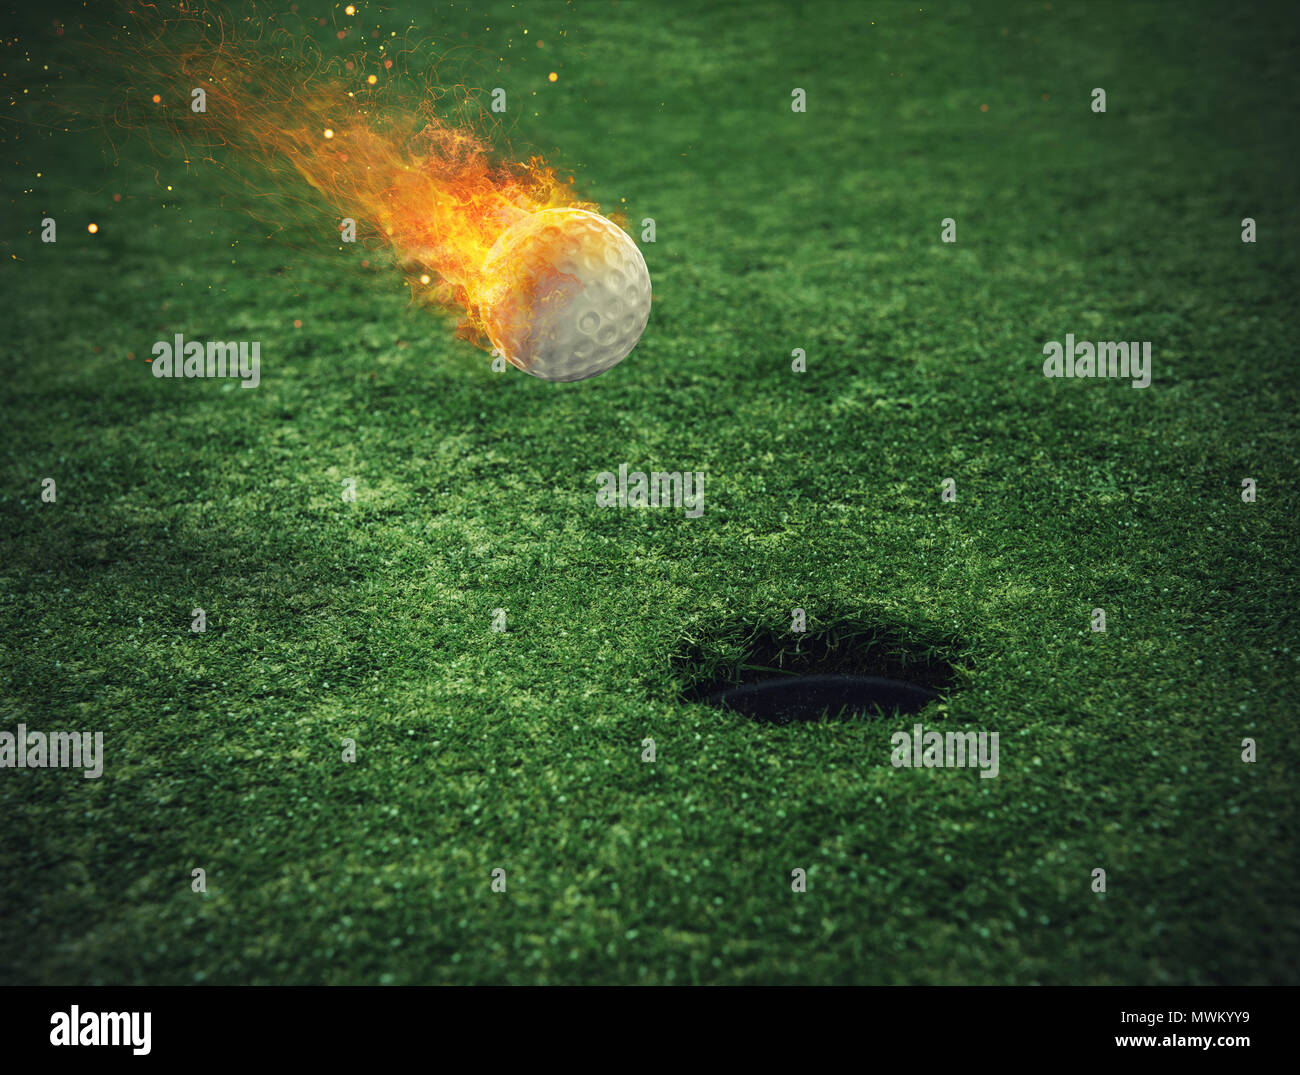 Fiery balle de golf près du trou dans un champ d'herbe Banque D'Images